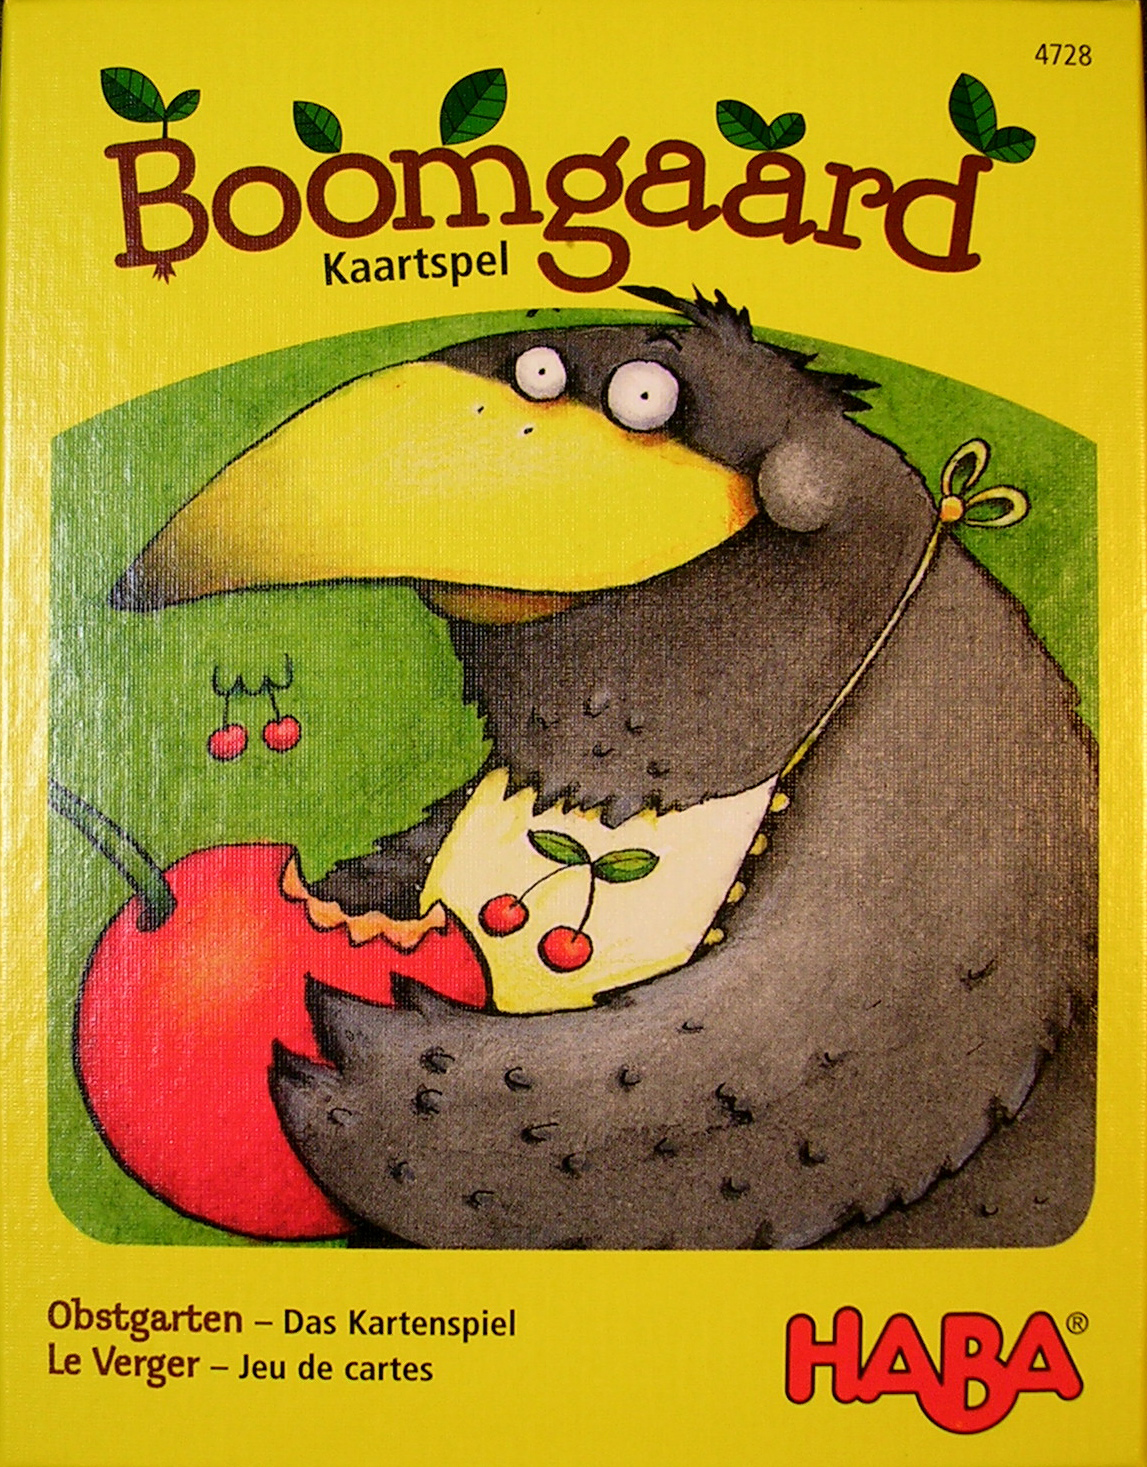 Boomgaard Kaartspel